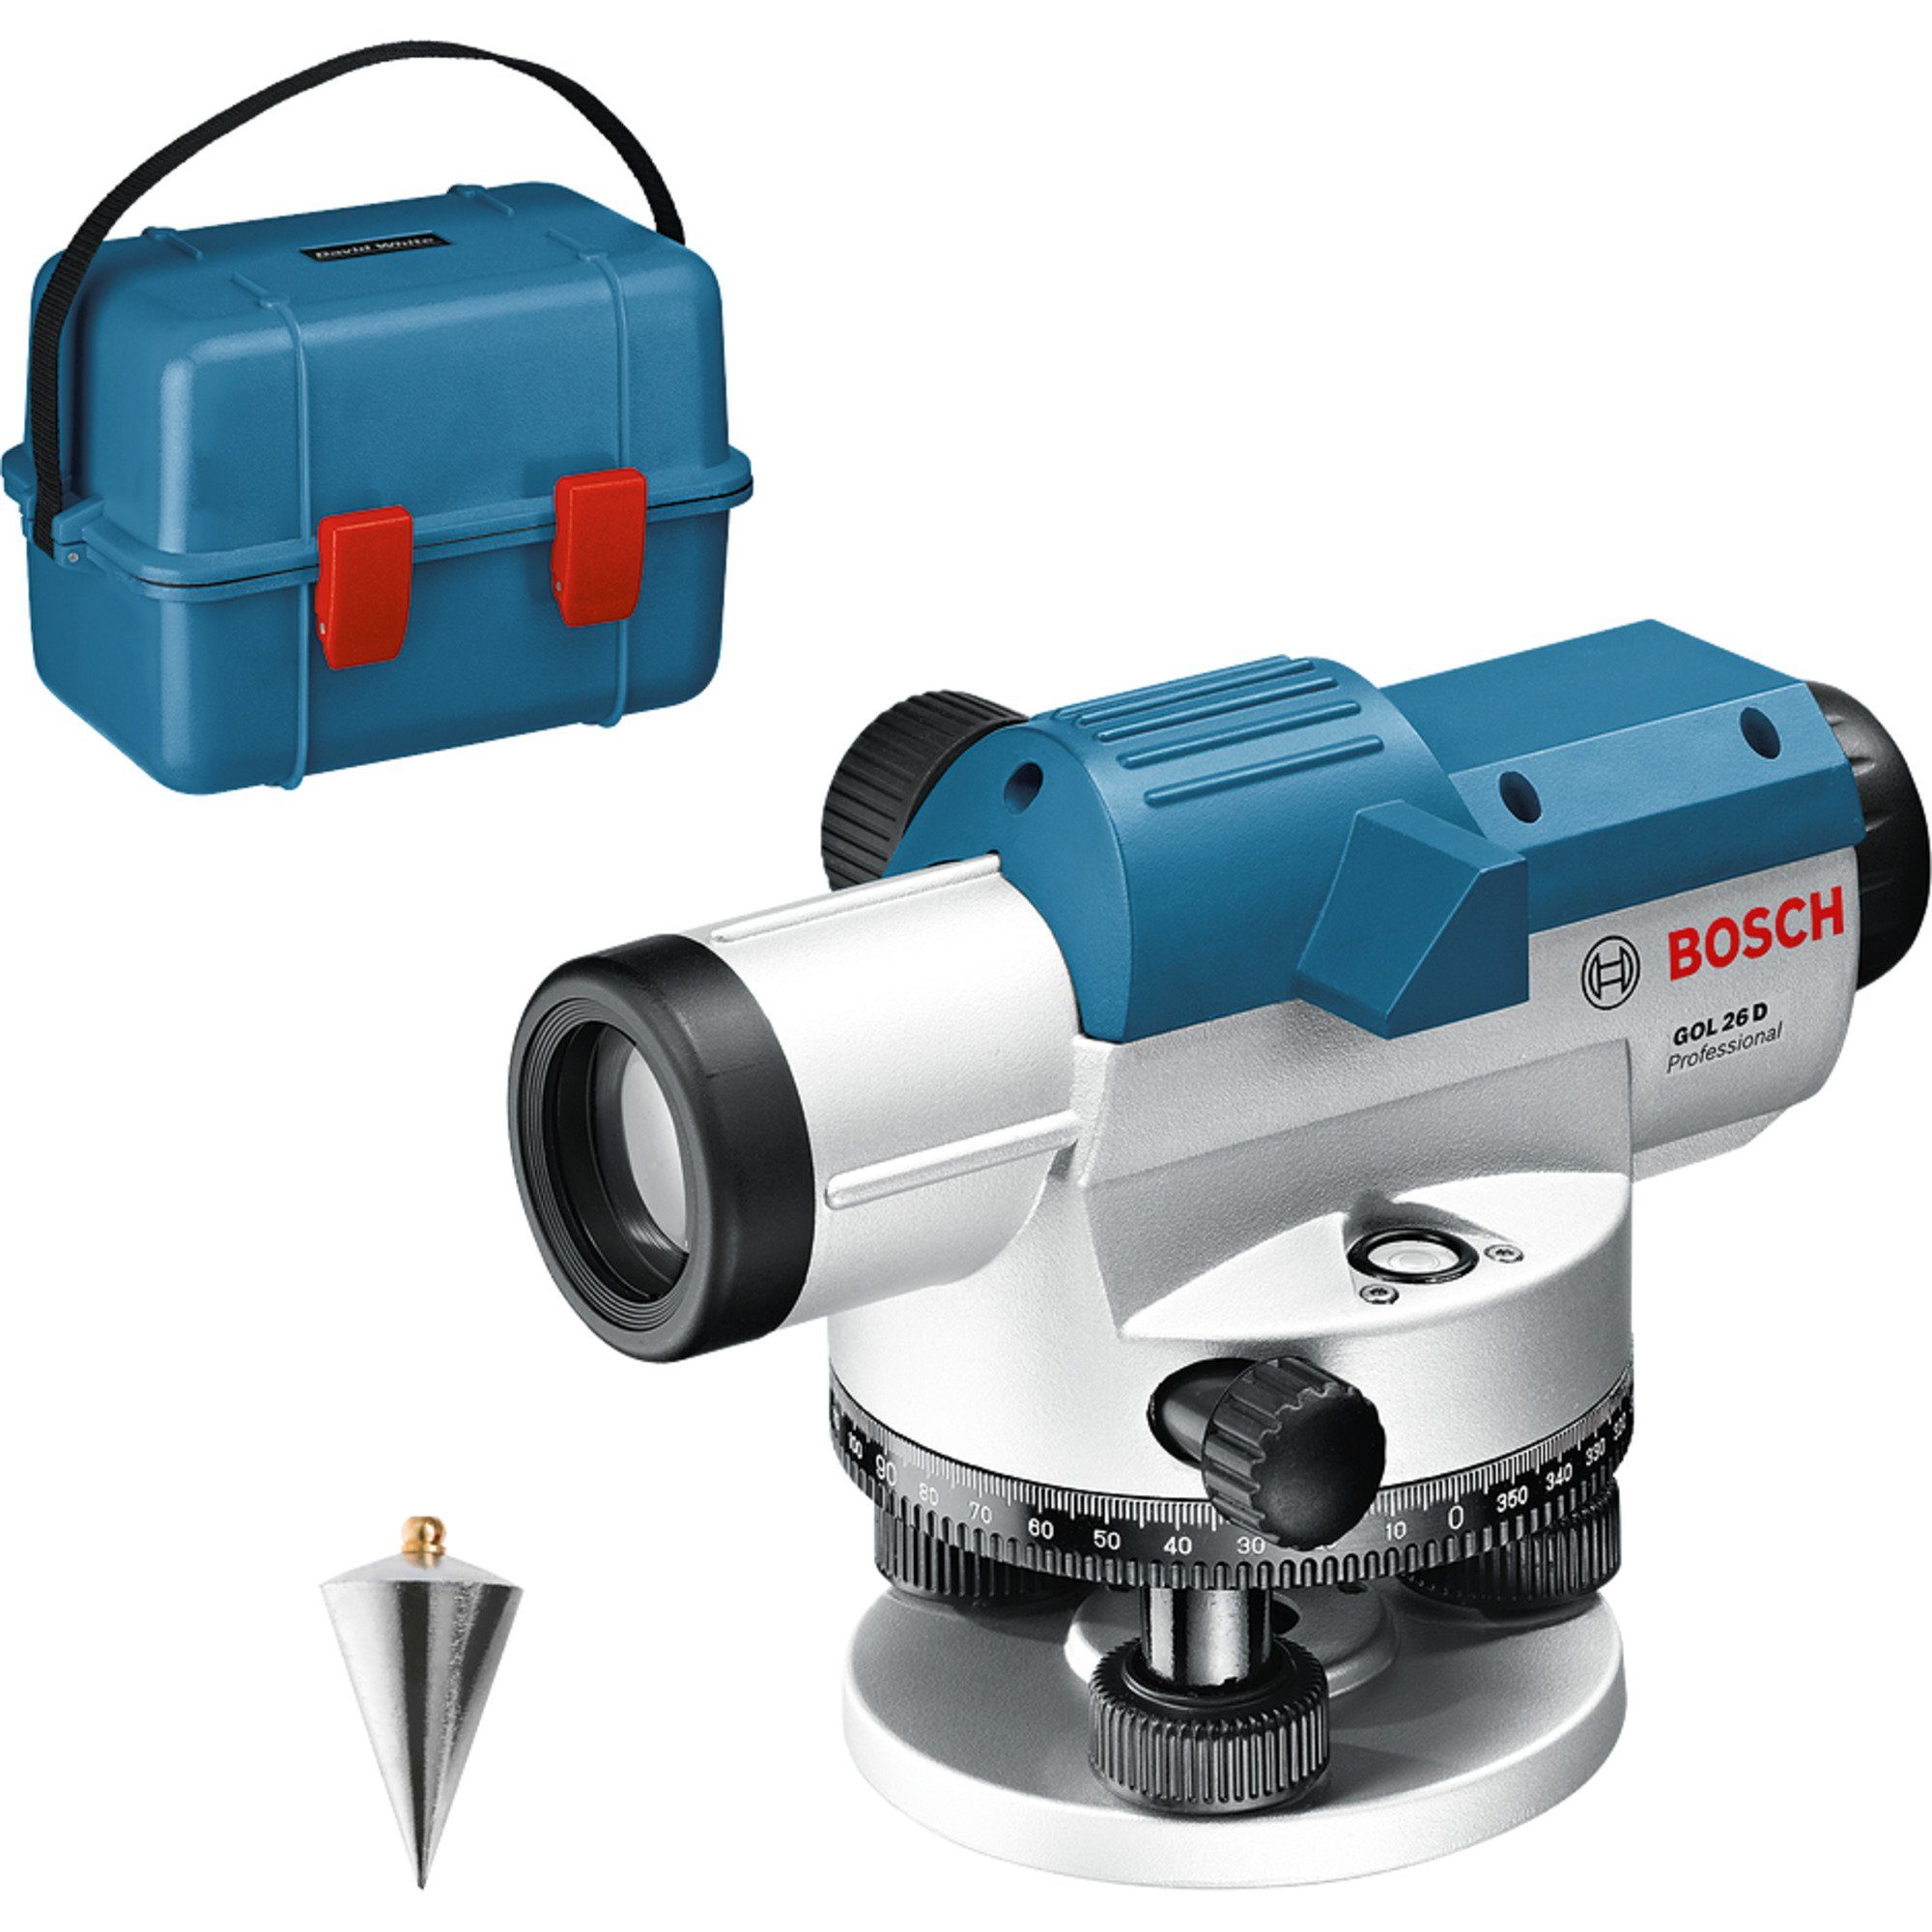 BOSCH Akku-Multifunktionswerkzeug Bosch Professional Optisches Nivelliergerät GOL 26